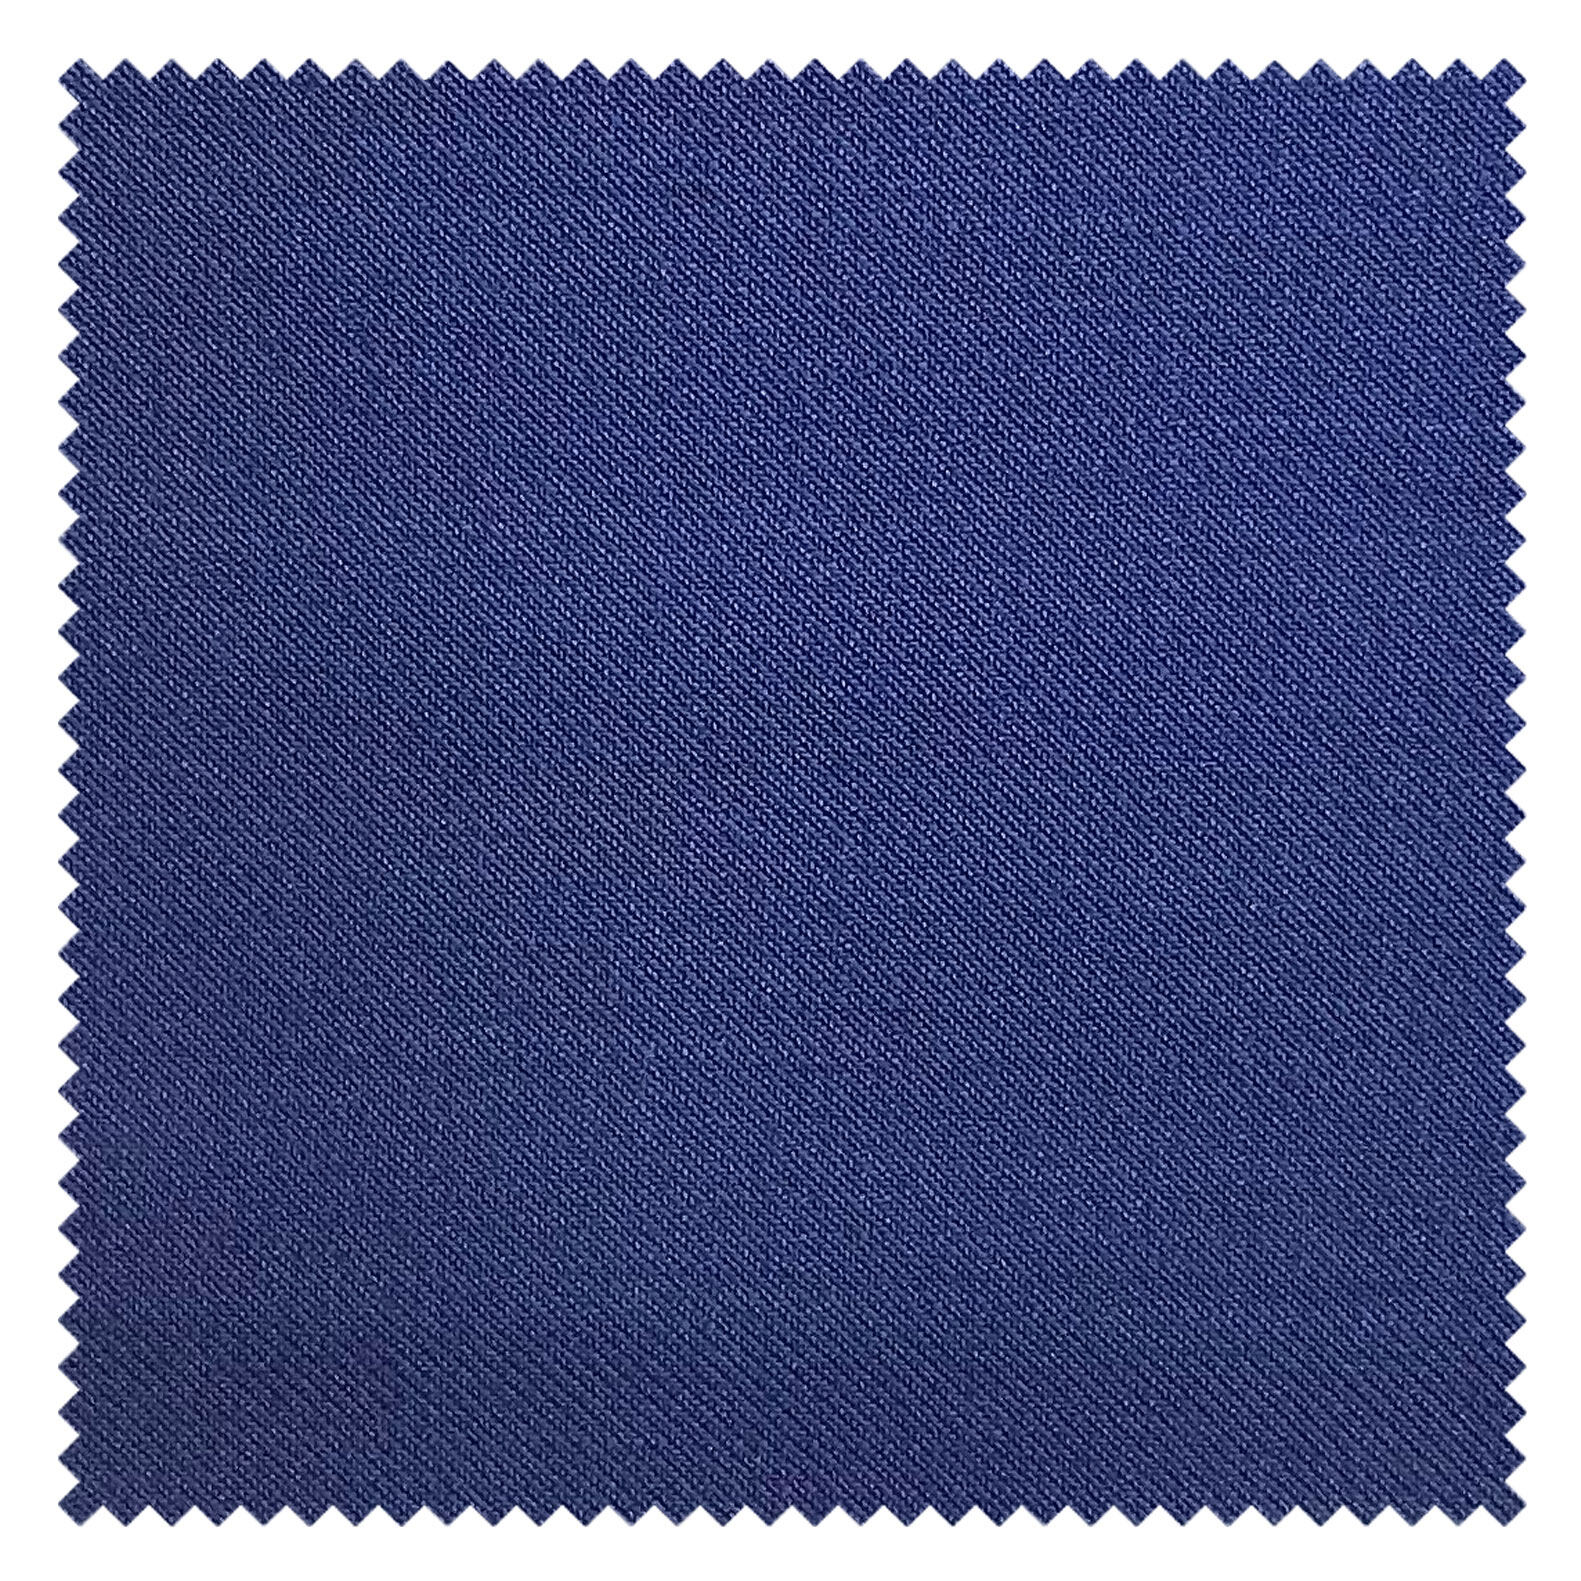 KINGMAN Cashmere Wool Fabric Royal Elegant ROYAL BLUE ผ้าตัดชุดสูท สีน้ำเงินสด กางเกง ผู้ชาย ผ้าตัดเสื้อ ยูนิฟอร์ม ผ้าวูล ผ้าคุณภาพดี กว้าง 60 นิ้ว ยาว 1 เมตร